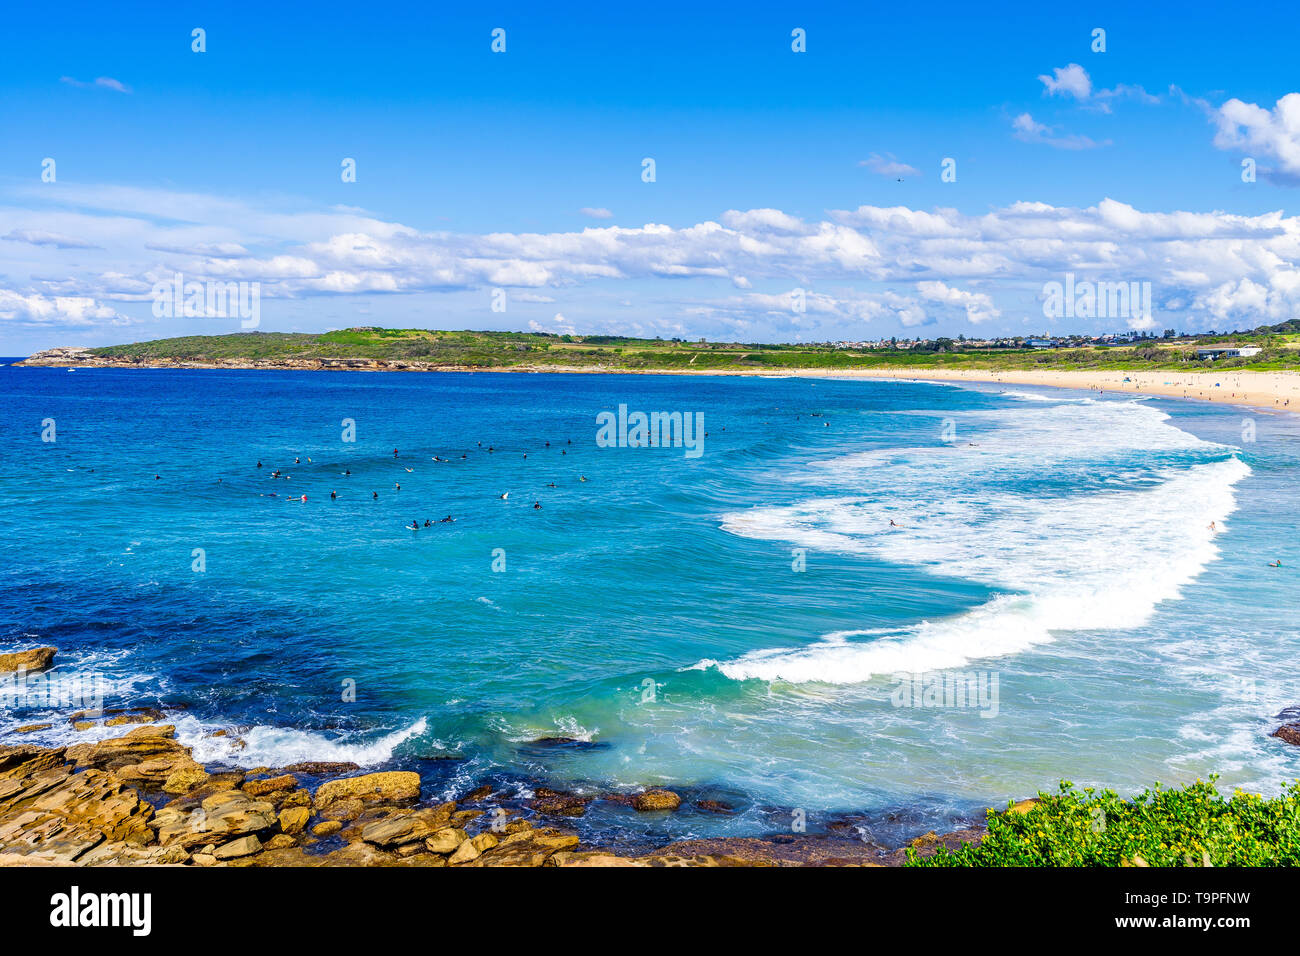 En Maroubra Beach en Sydney, Australia Foto de stock